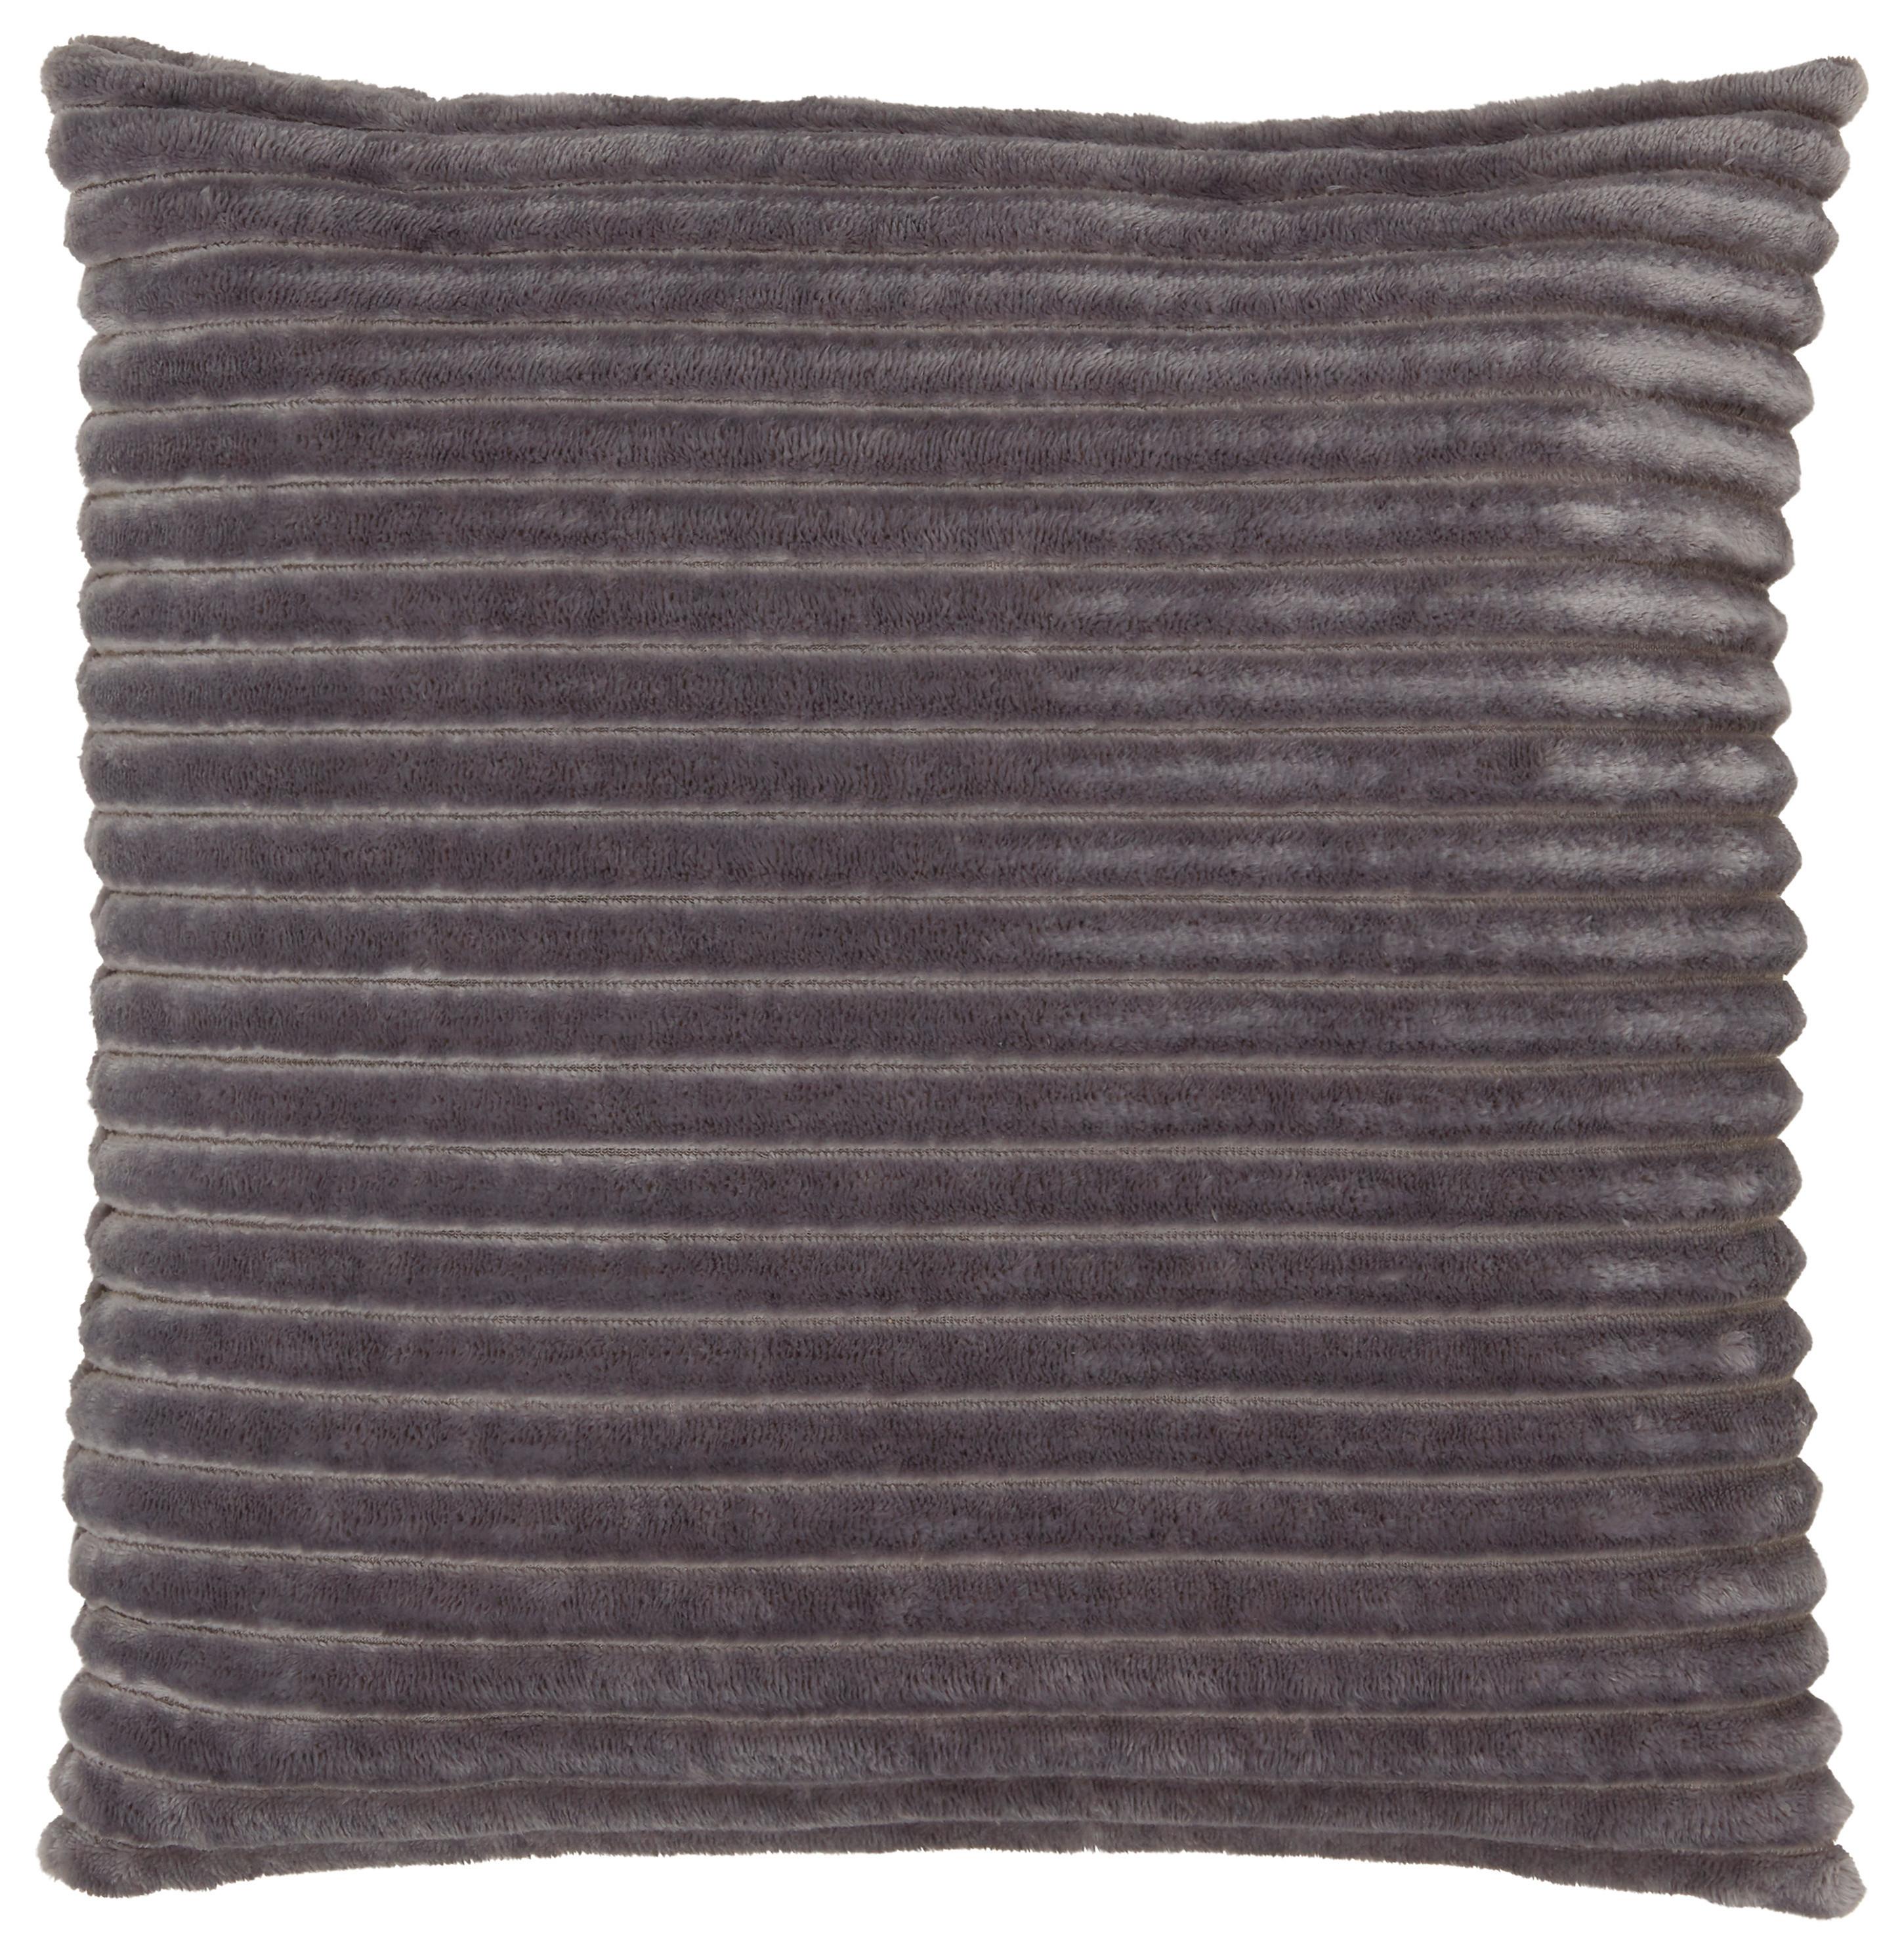 Dekorační Polštář Cordi - šedá, Konvenční, textil (45/45cm) - Modern Living